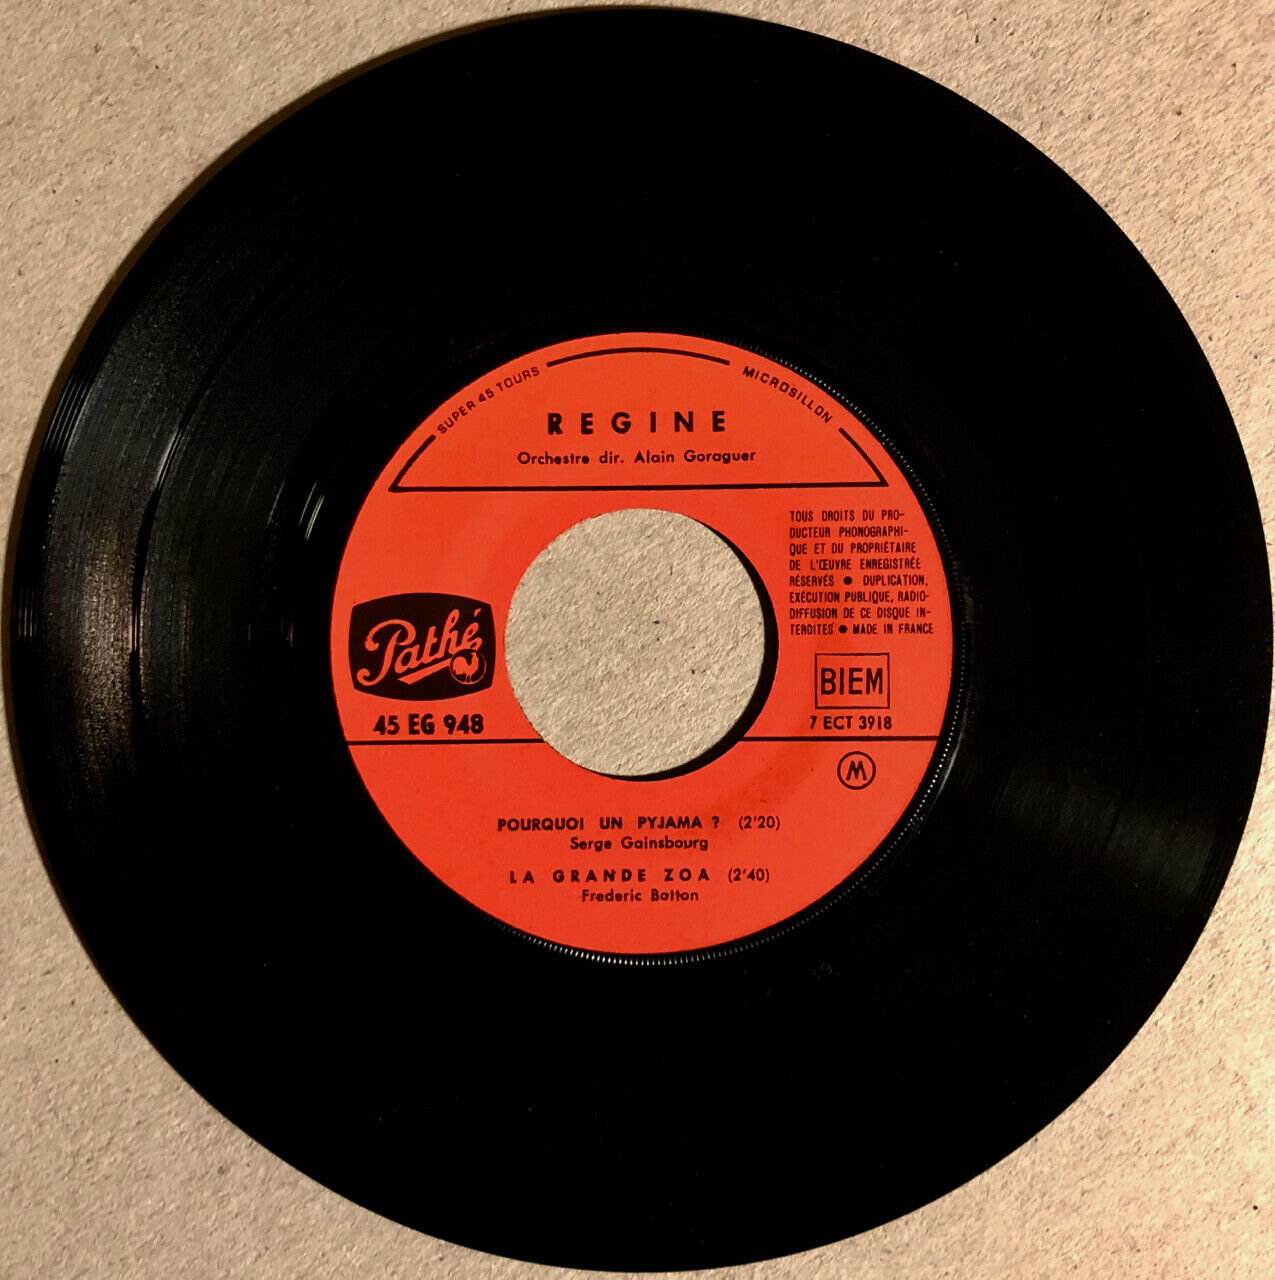 [Gainsbourg]Régine — Pourquoi un pyjama + 3 — EP 45 RPM 7" — Pathé EG 948 — 1966